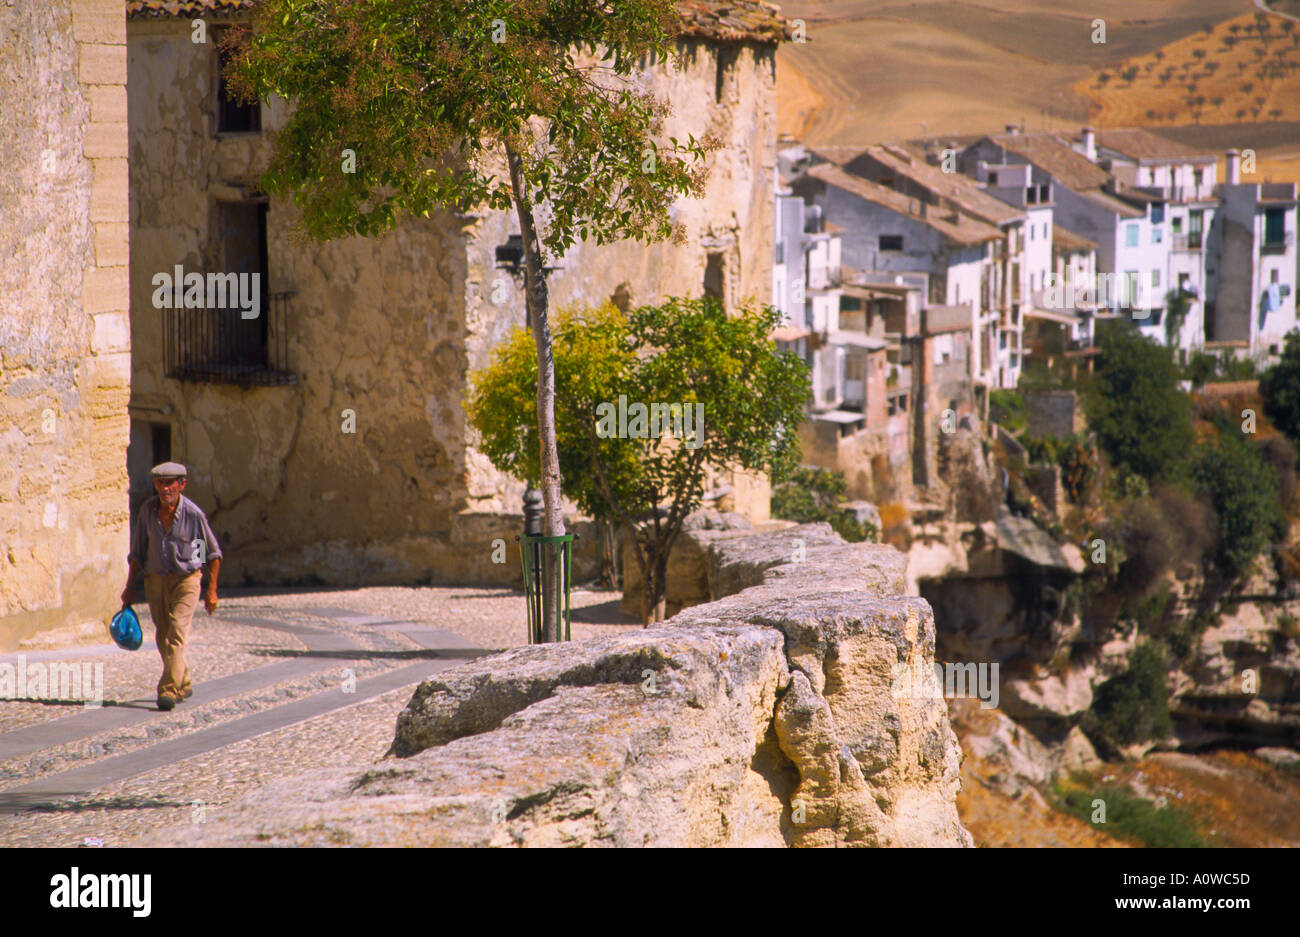 Homme marchant sur la terrasse de Alhama de Granada, Andalousie Espagne Banque D'Images